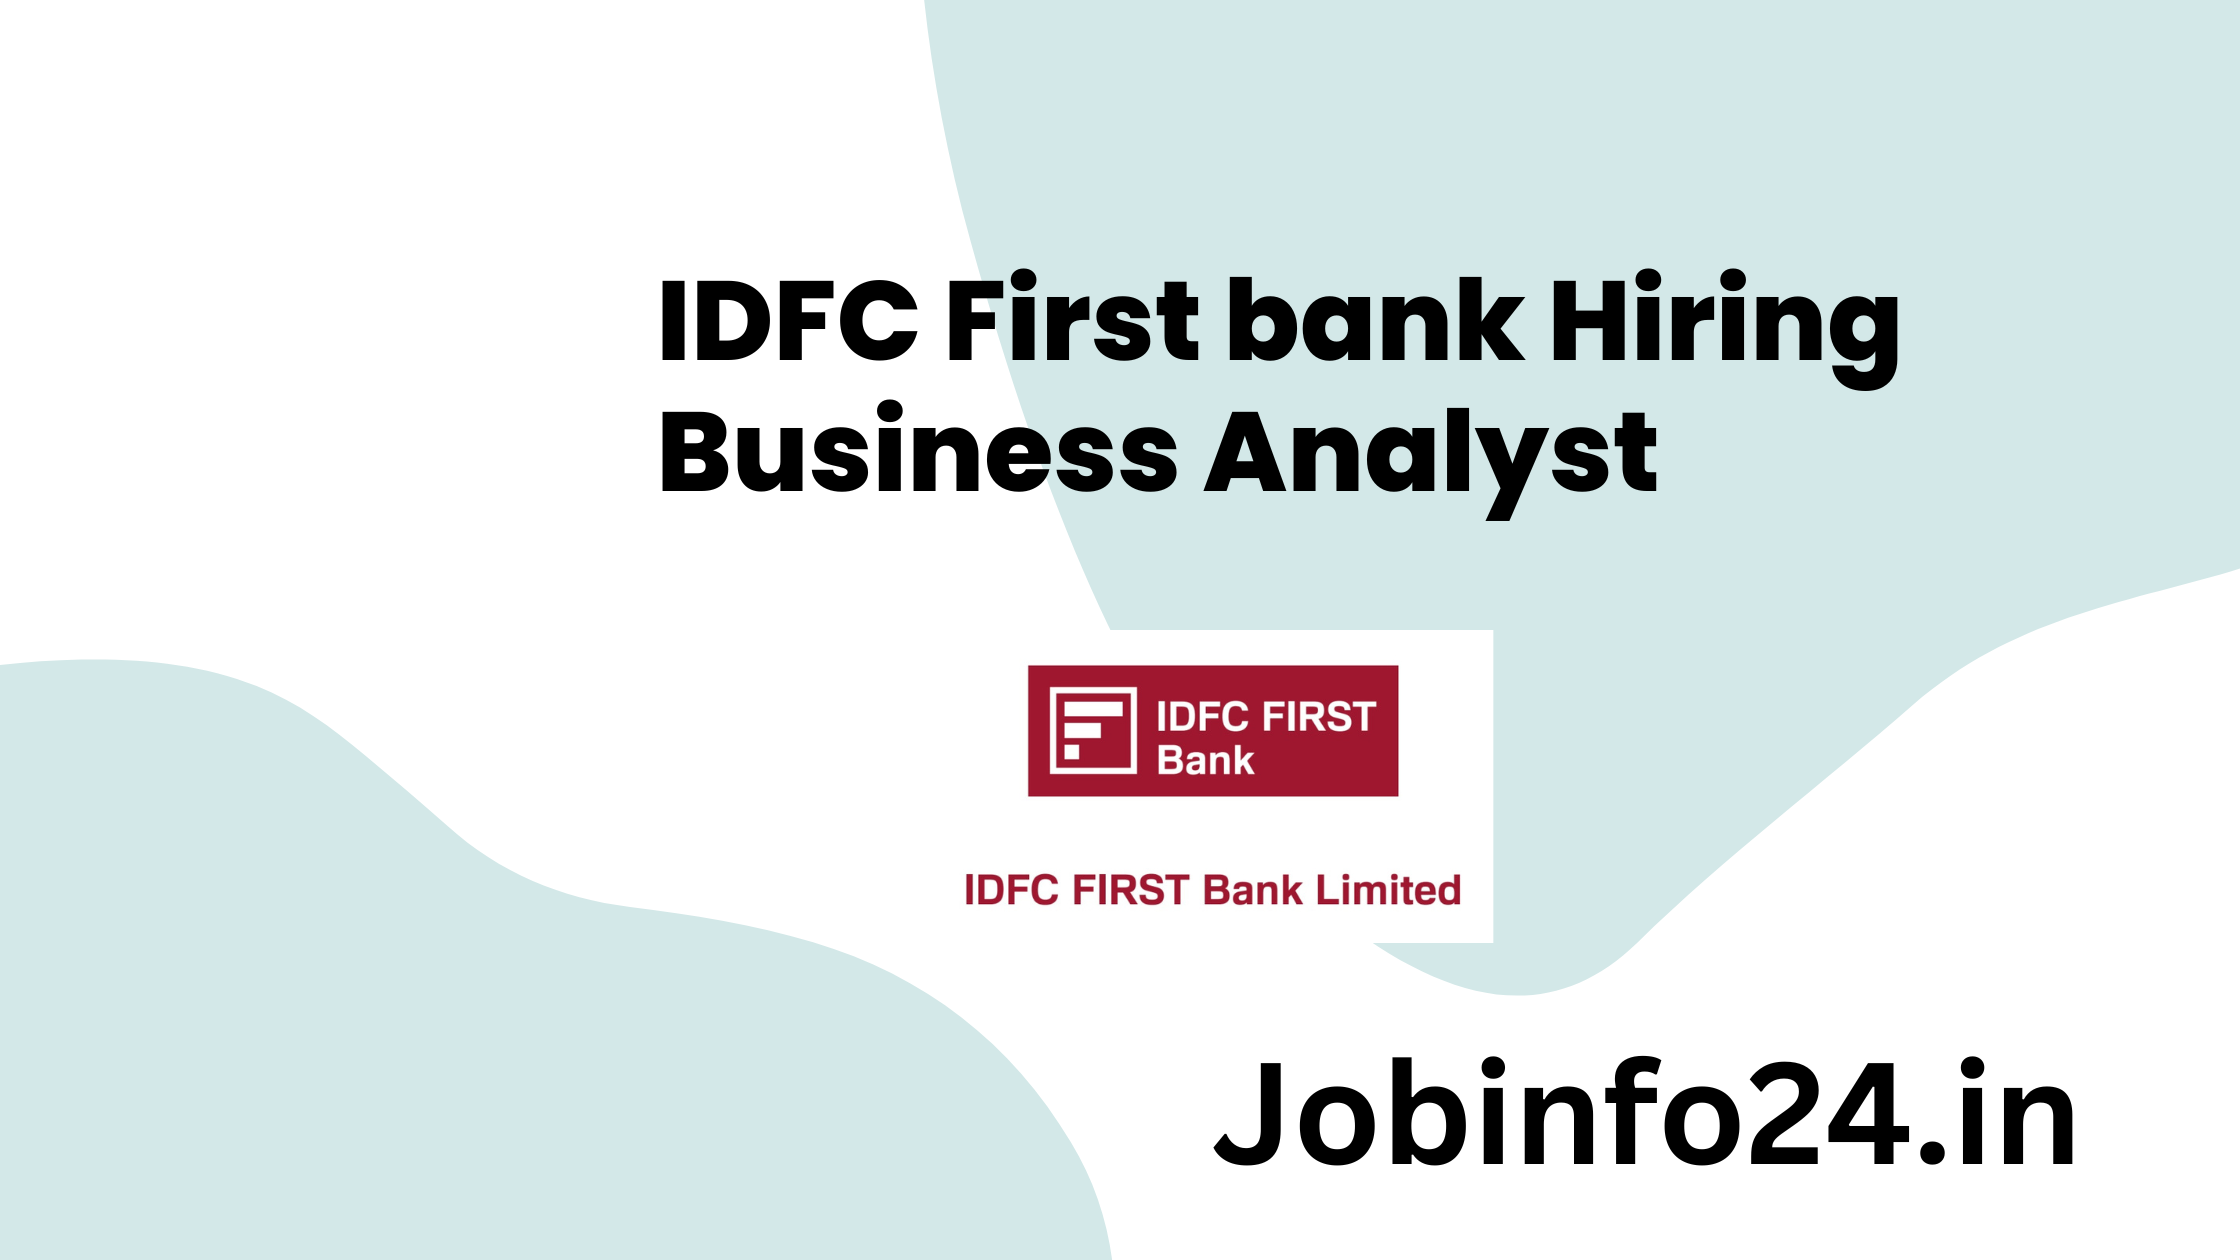 IDFC First bank Hiring Business Analyst